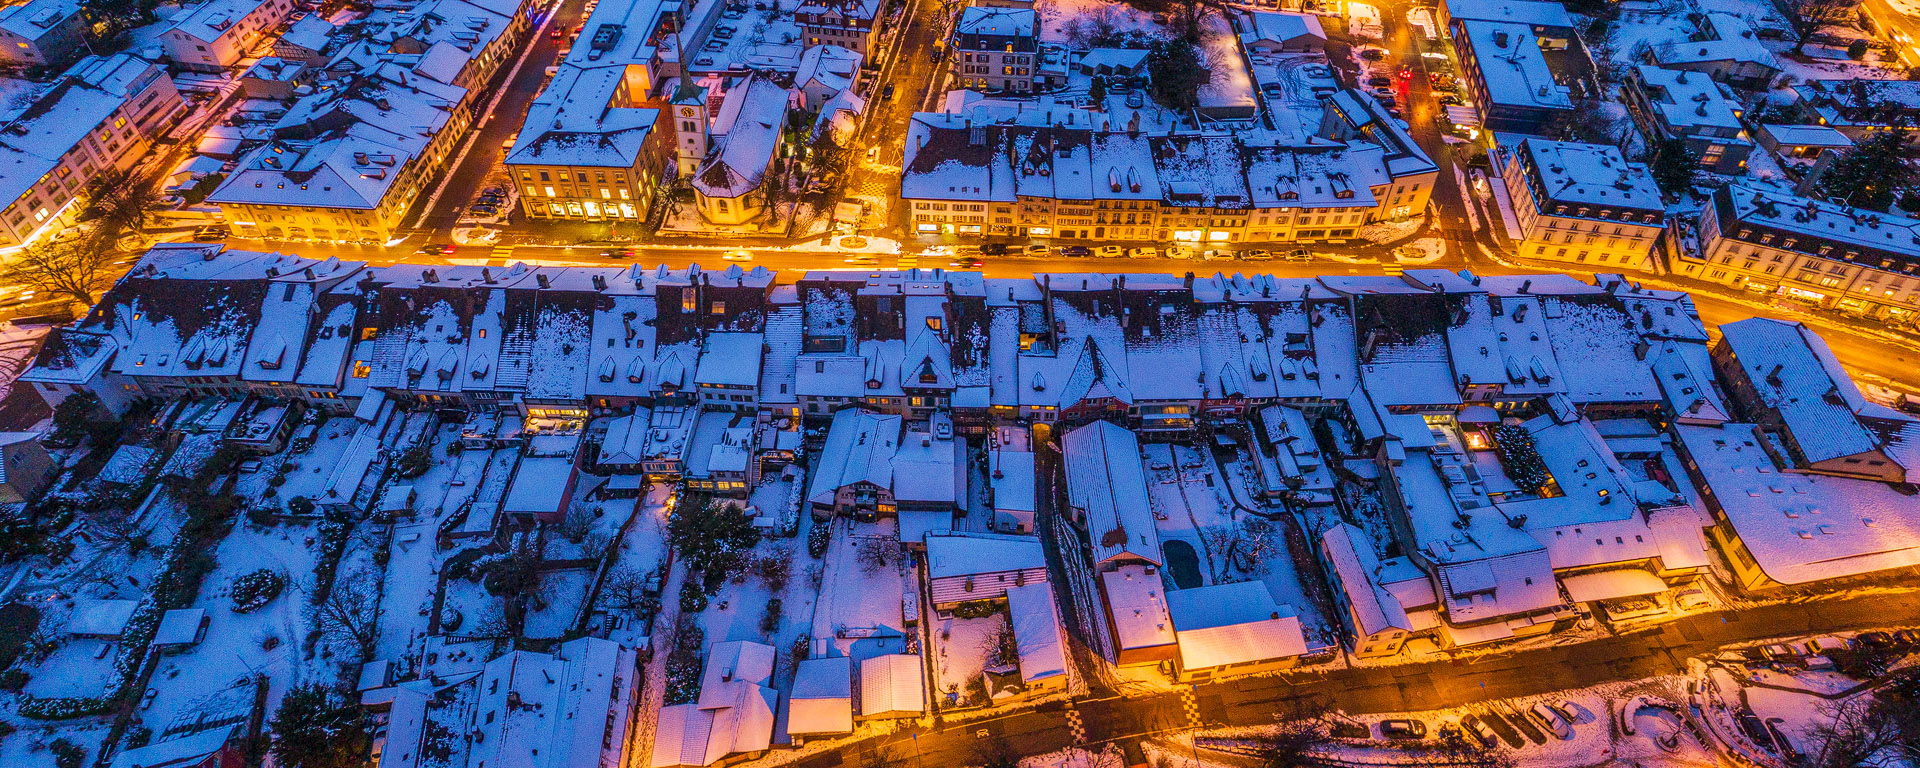 Winteraufnahme Nidau aus der Luft gesehen.